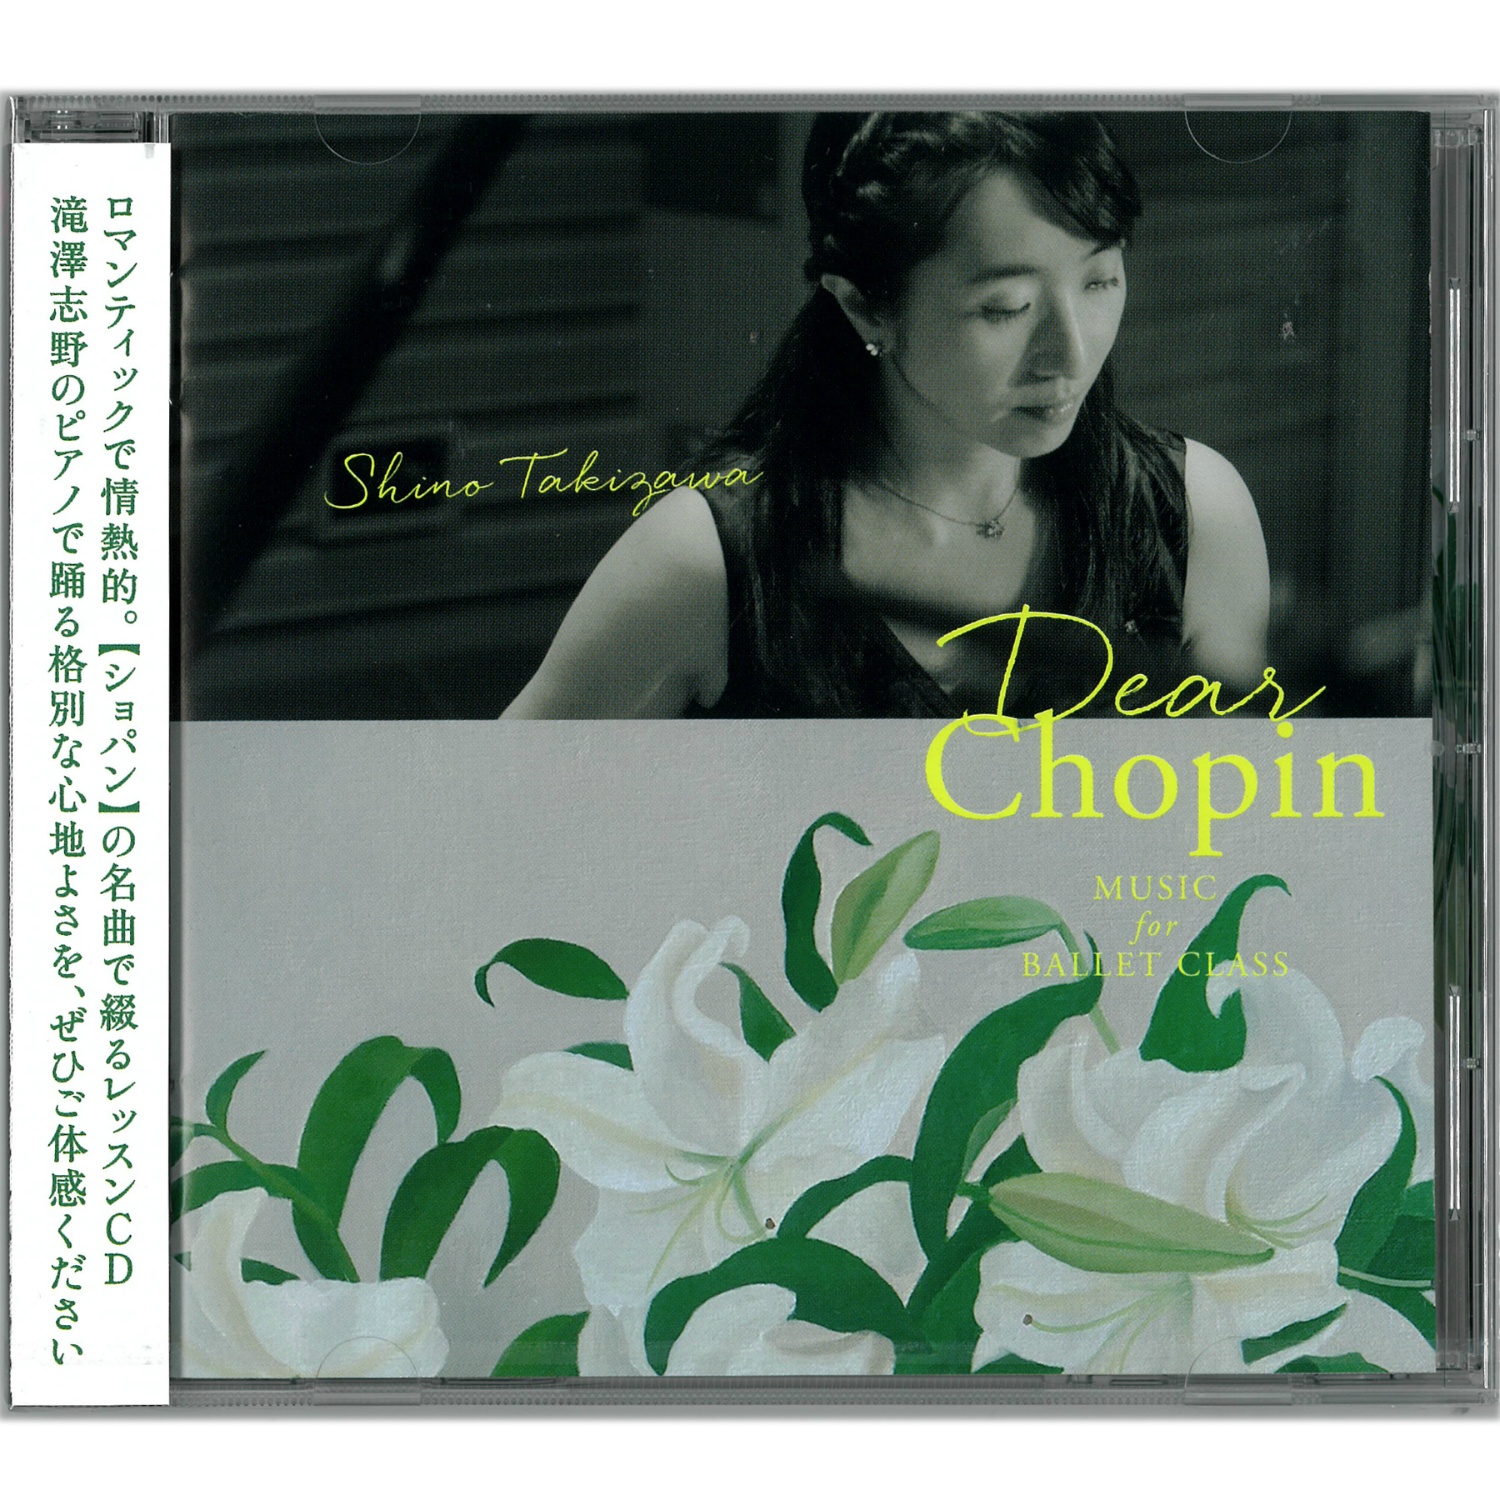 【CD】滝澤志野　Dear Chopin Music for Ballet Class 5459